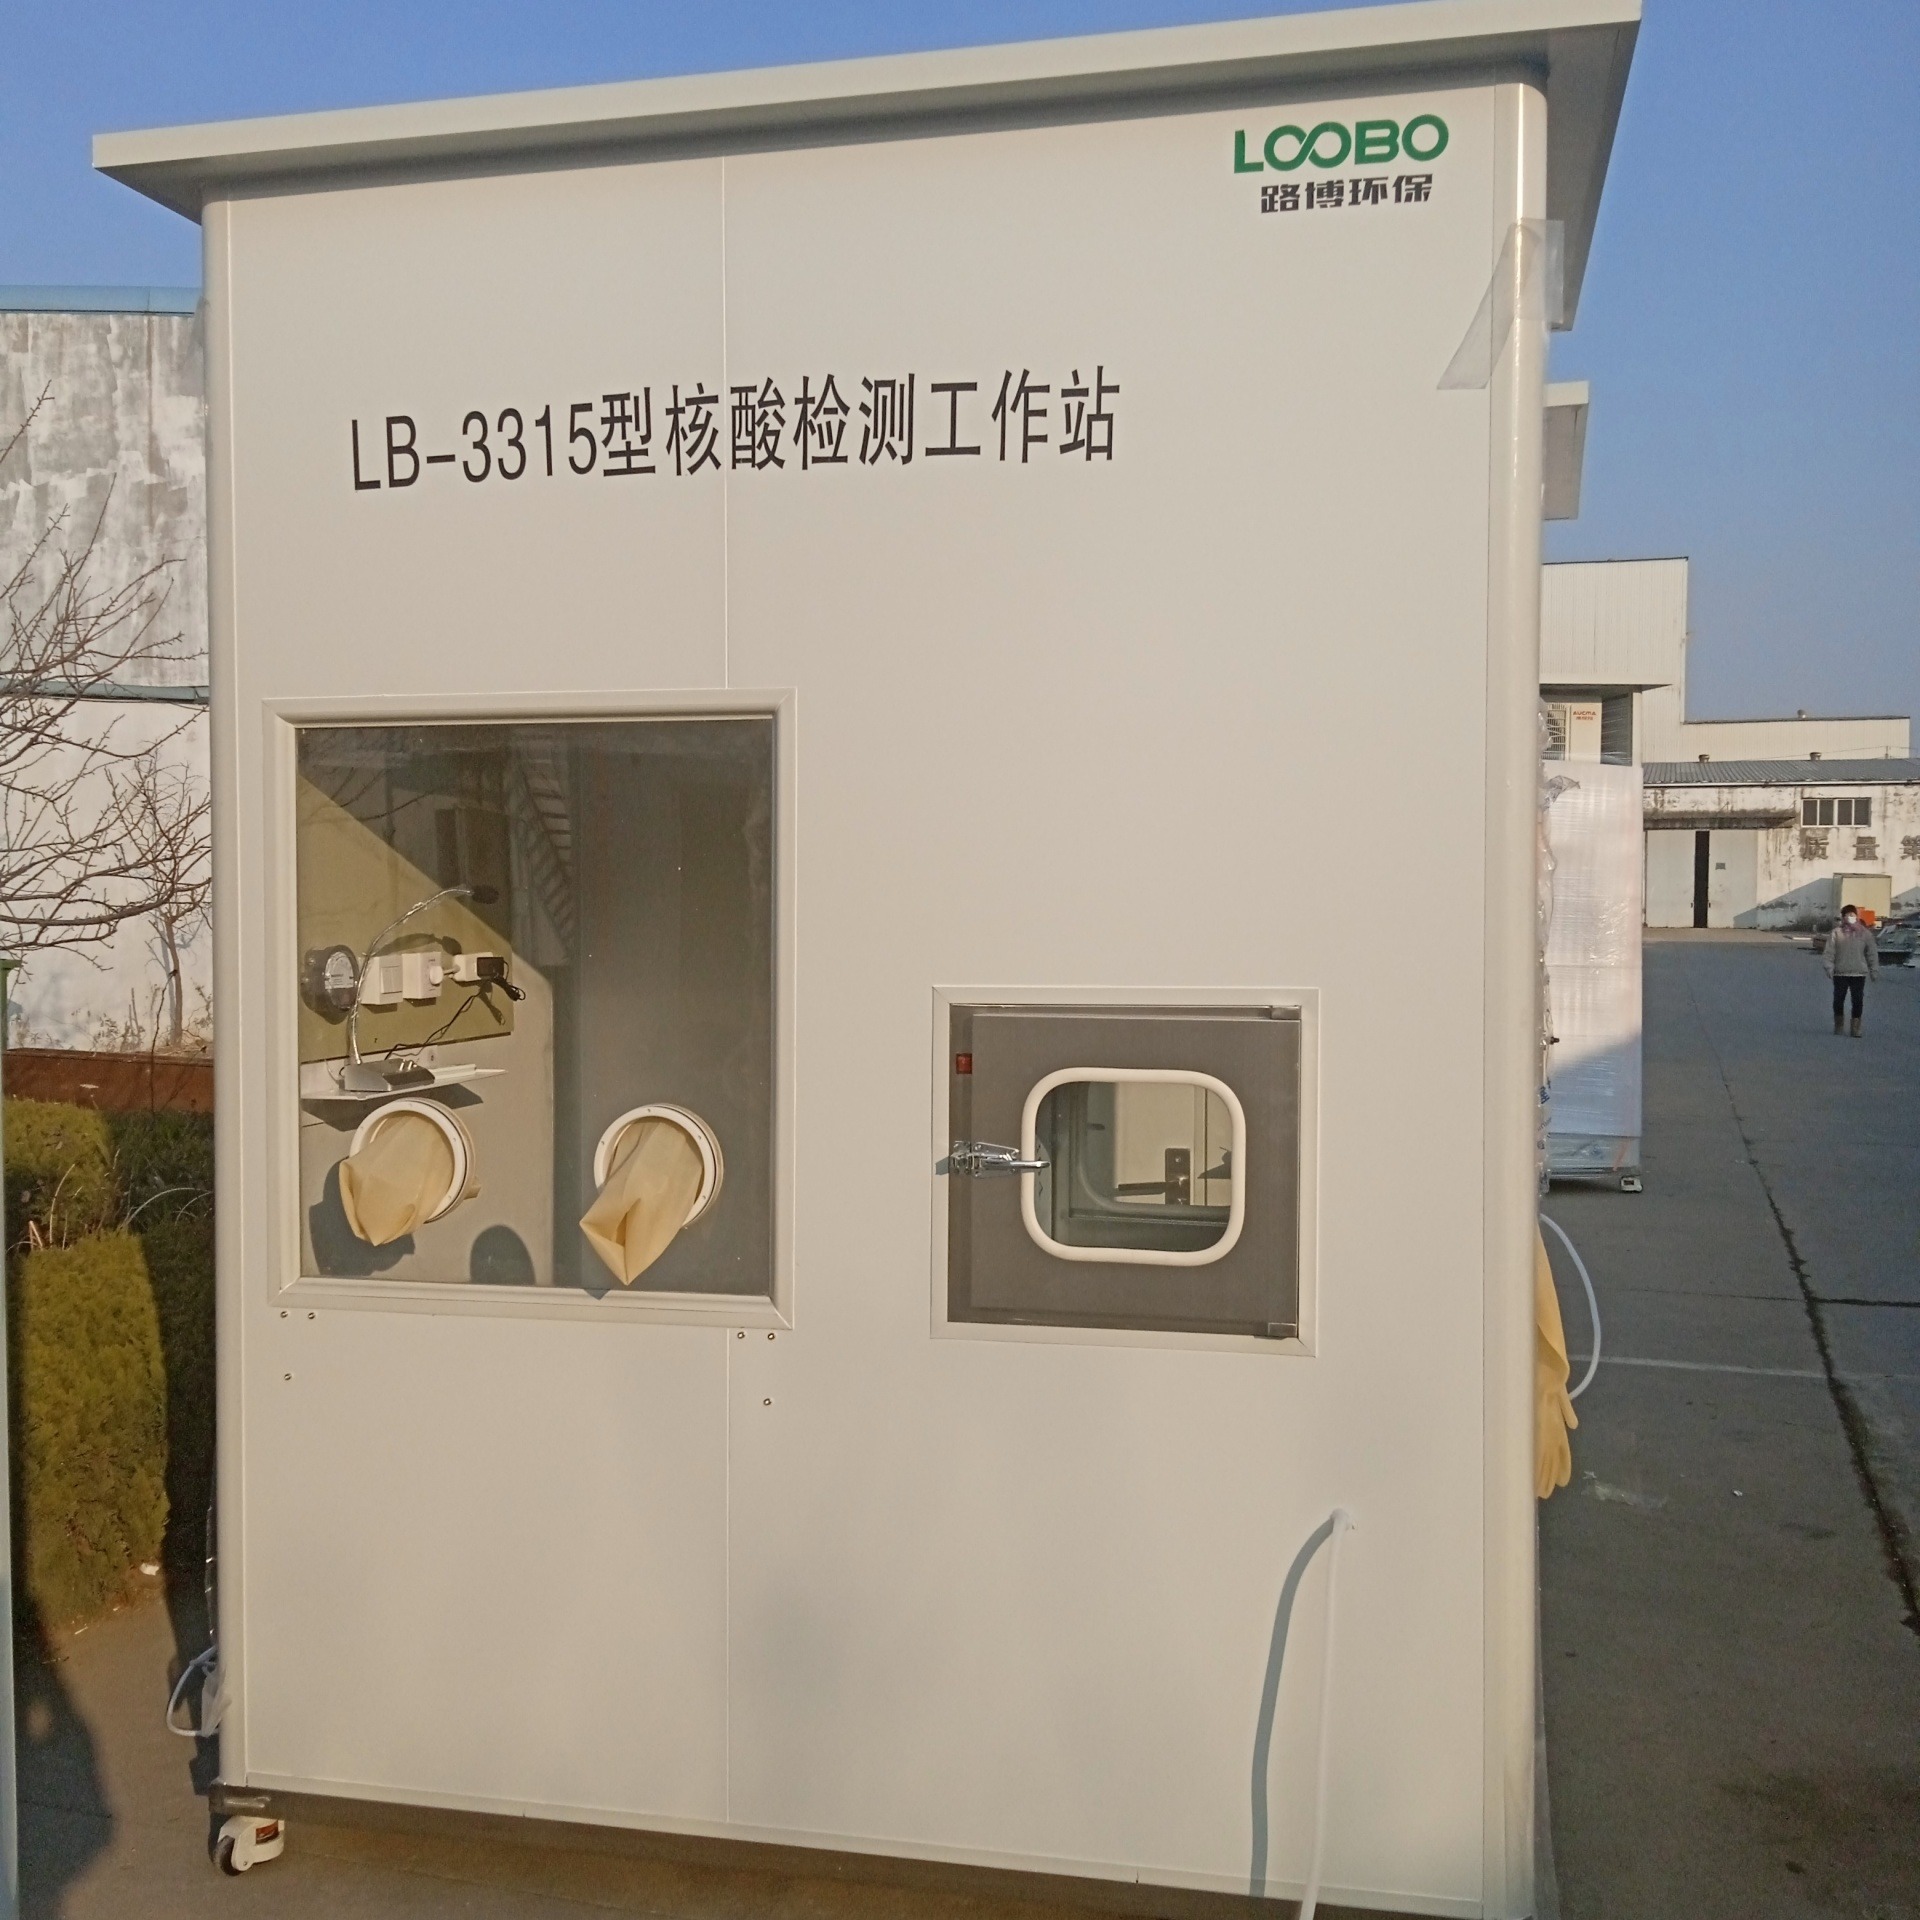 青岛路博自产 LB-3315 核酸采样工作站  双侧采样 支持厂家定制 助力冬季核酸采样